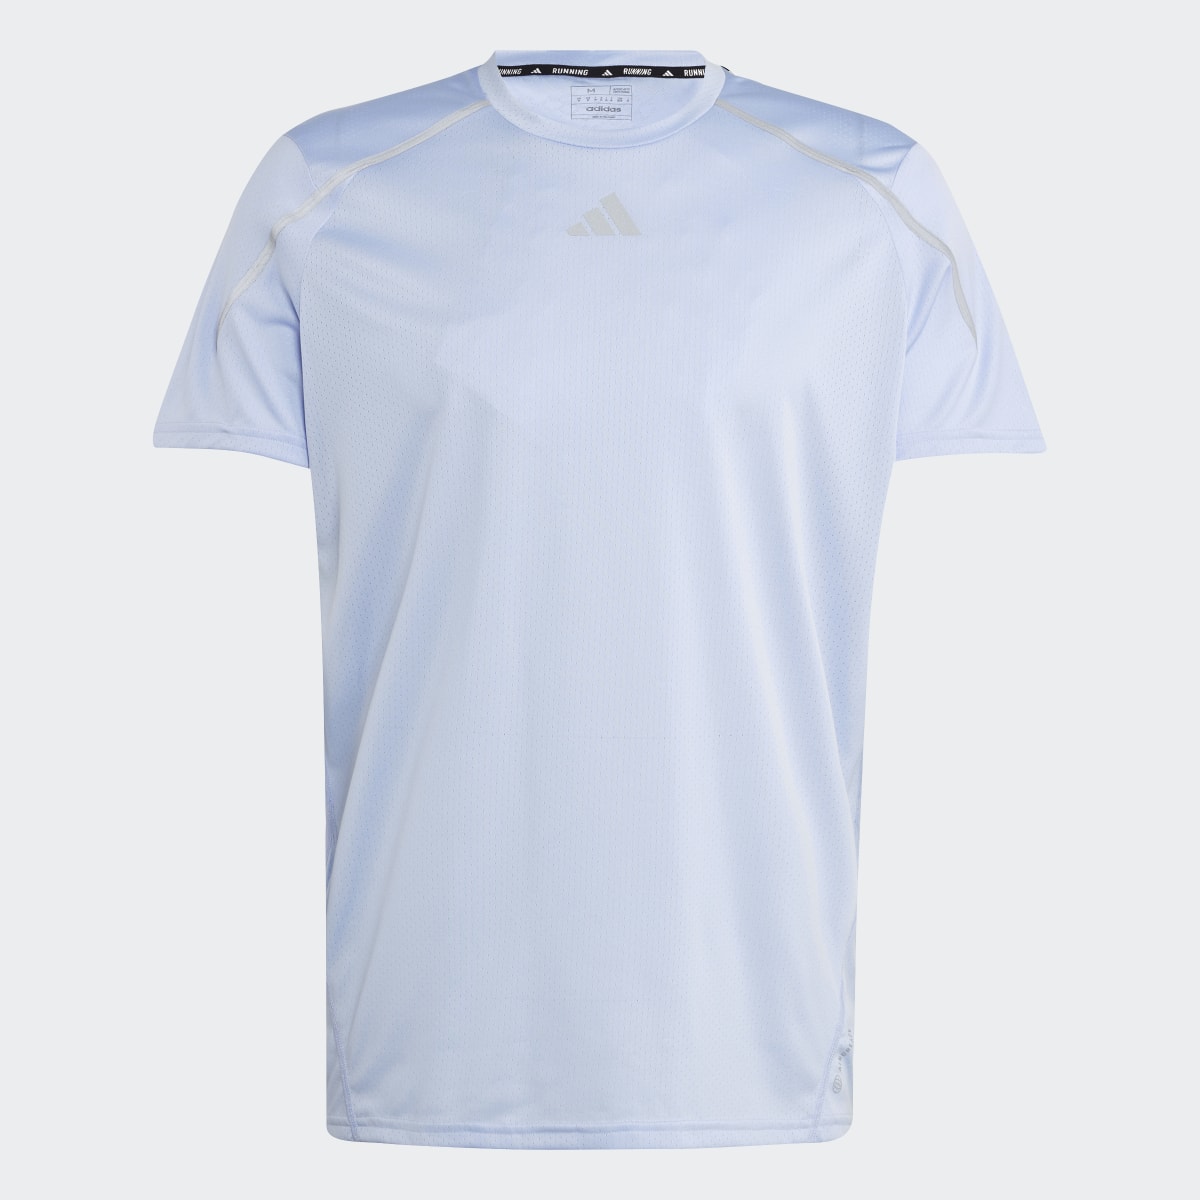 Adidas Confident Engineered T-Shirt. 5